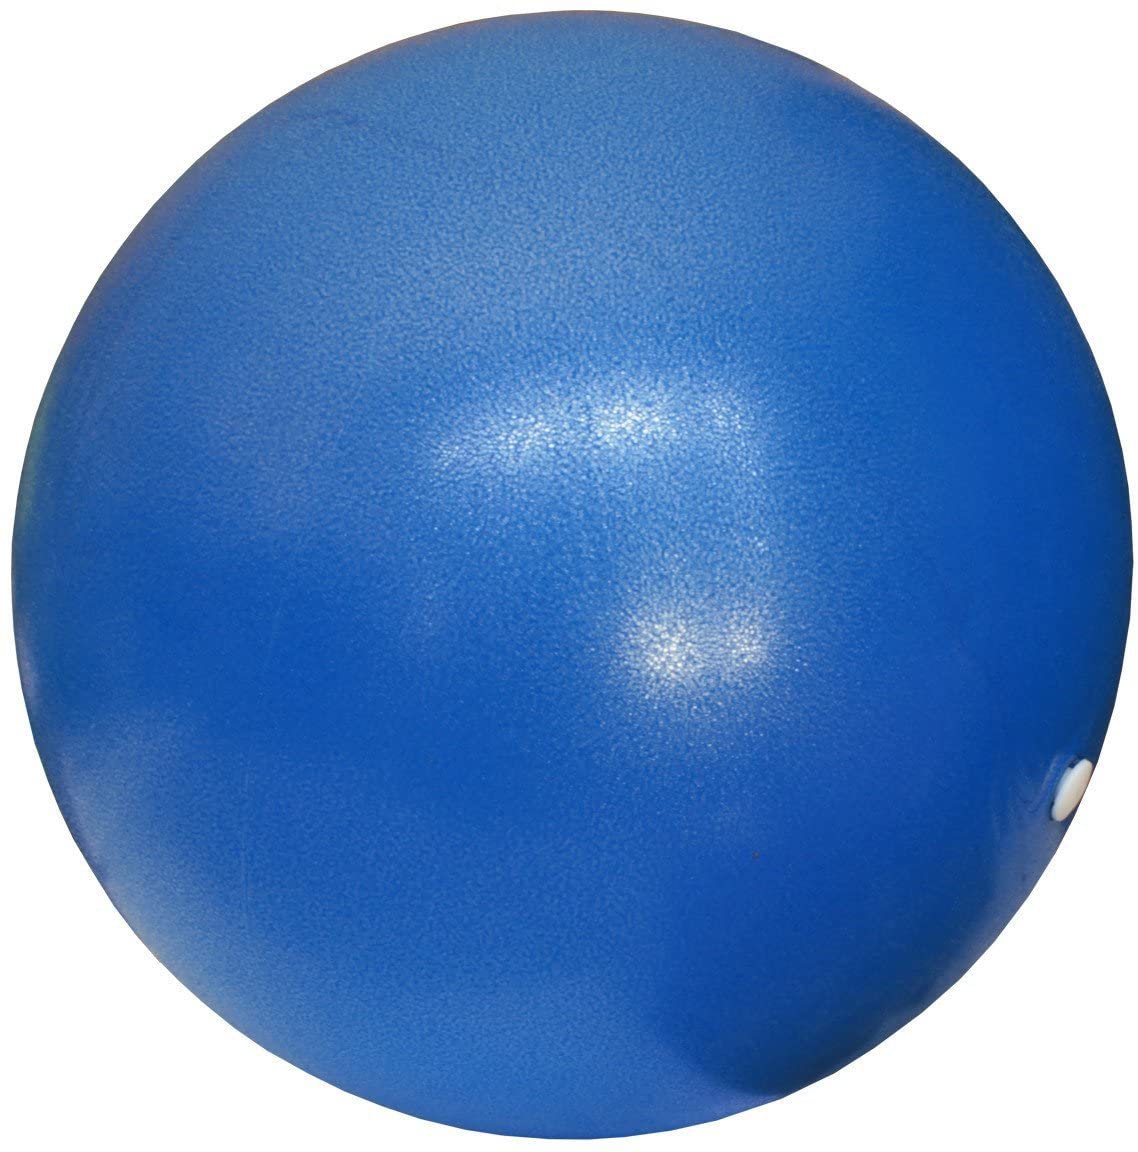 Pilates Rubber Ball